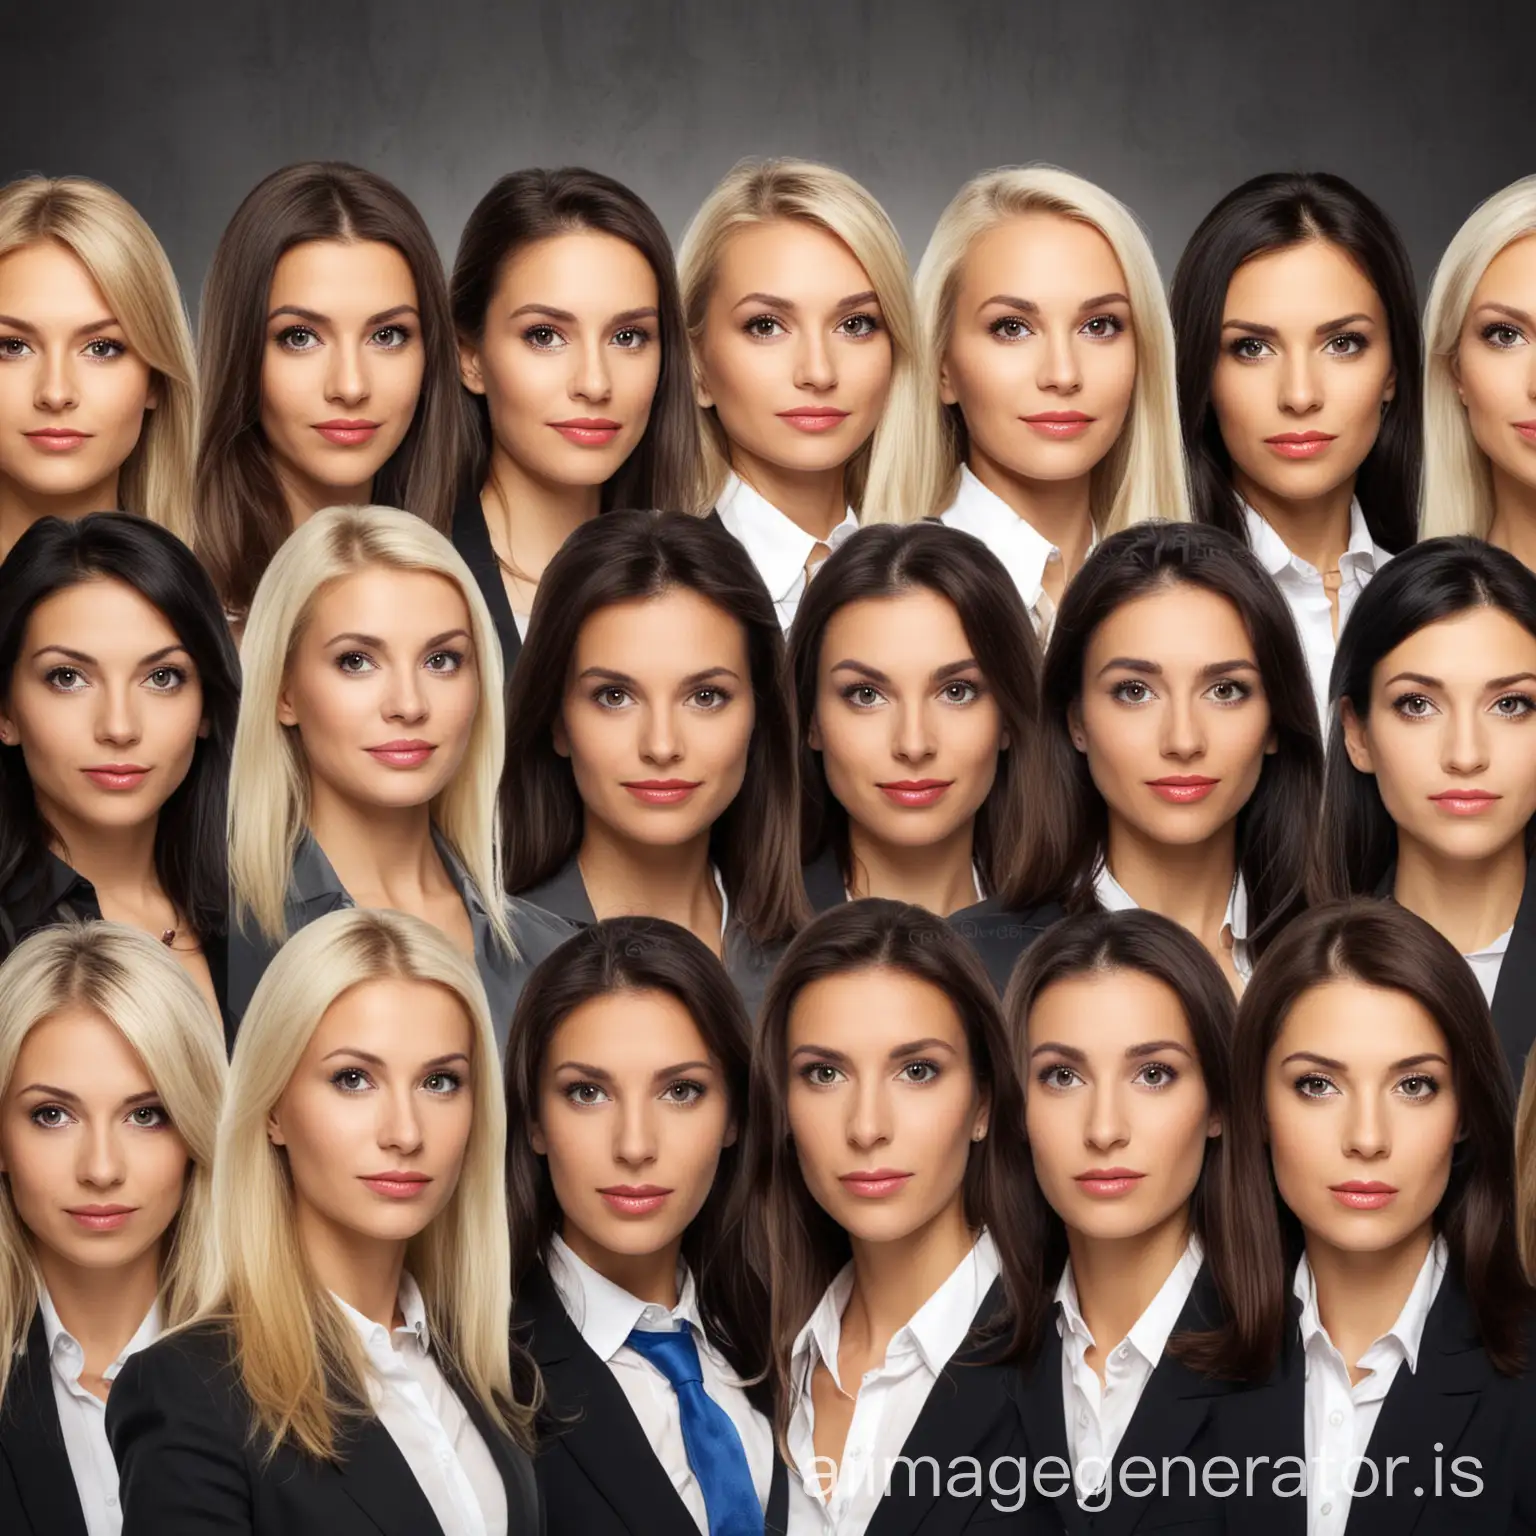 jury of twelve attractive businesswomen